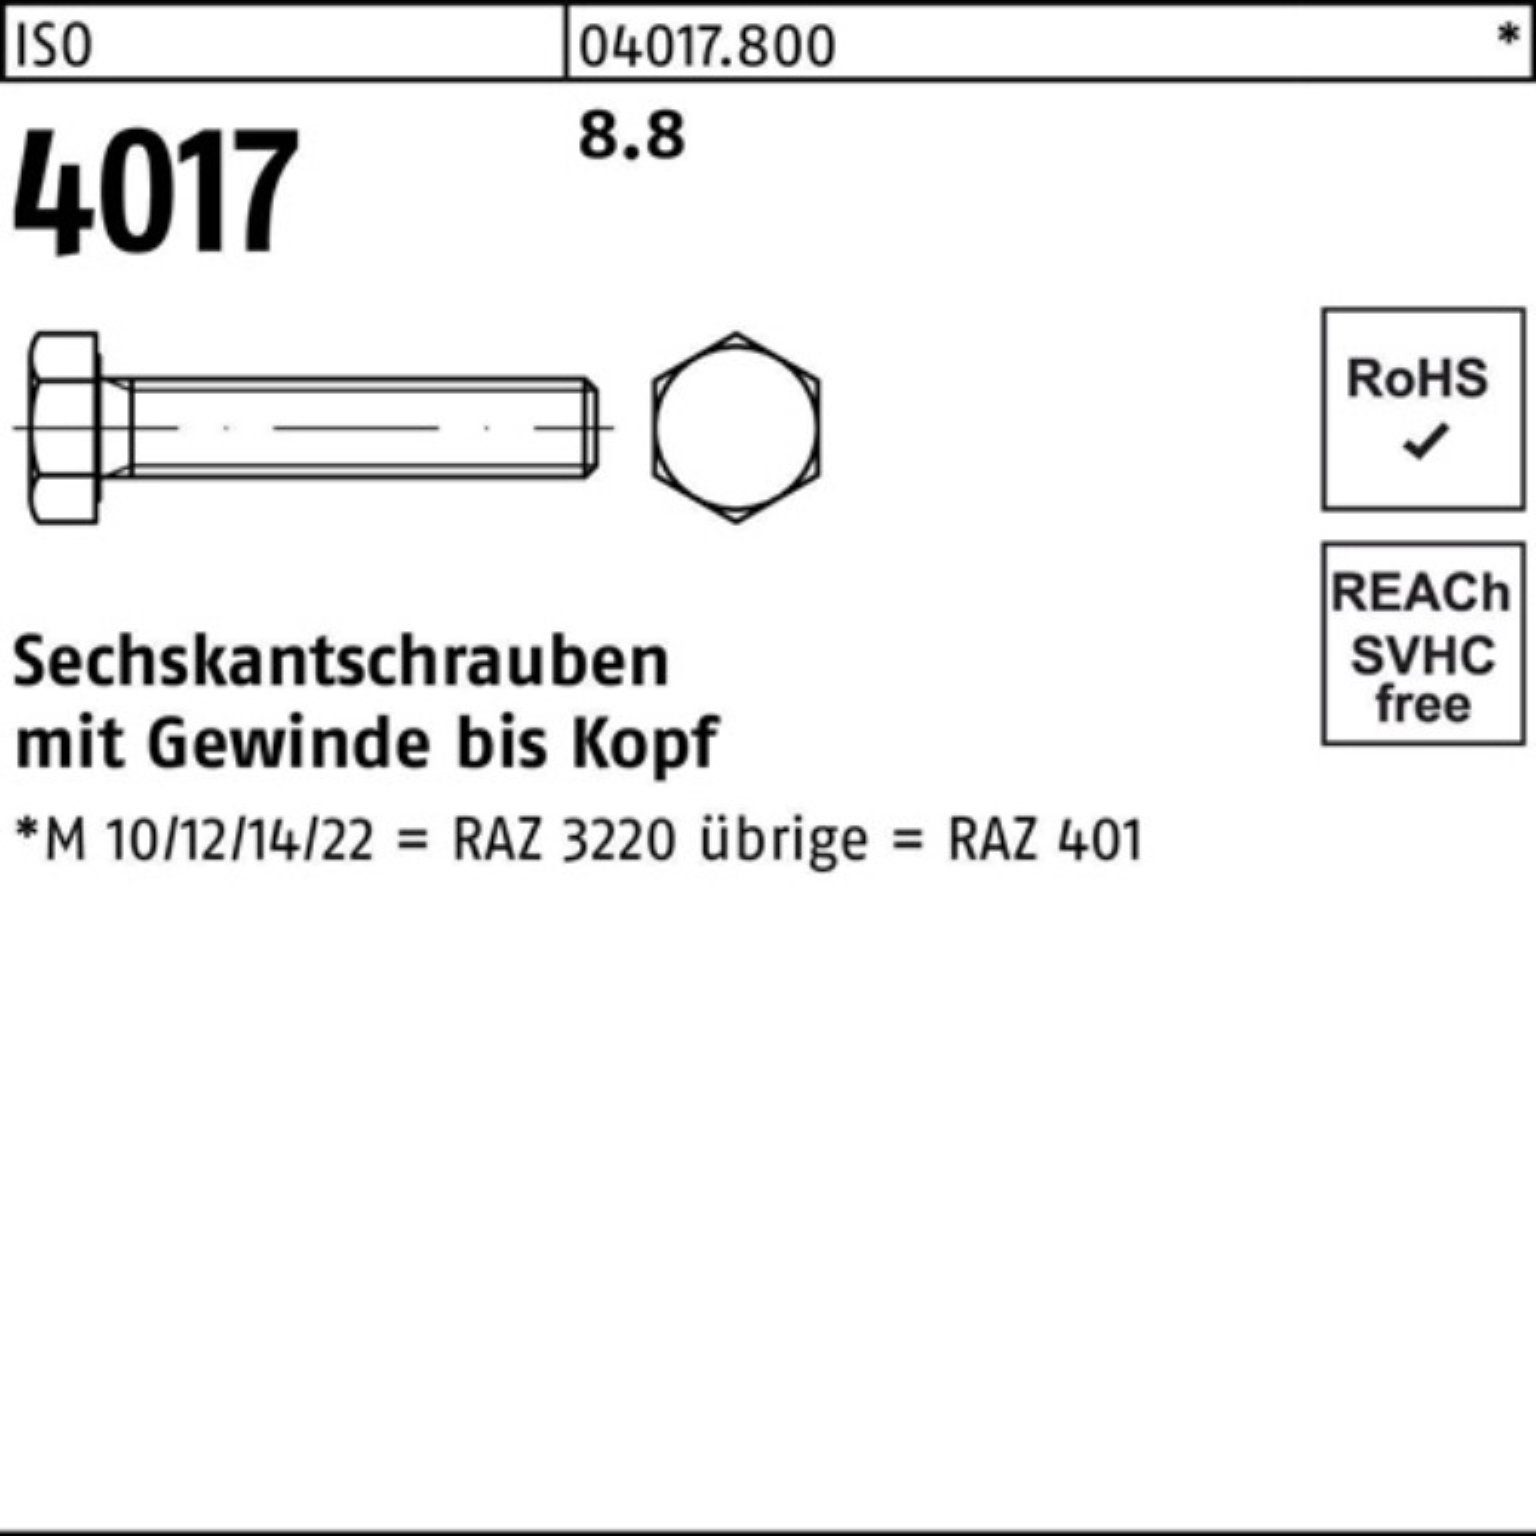 ISO VG Sechskantschraube Stück 401 M36x 4017 ISO 1 Bufab Pack Sechskantschraube 8.8 120 100er